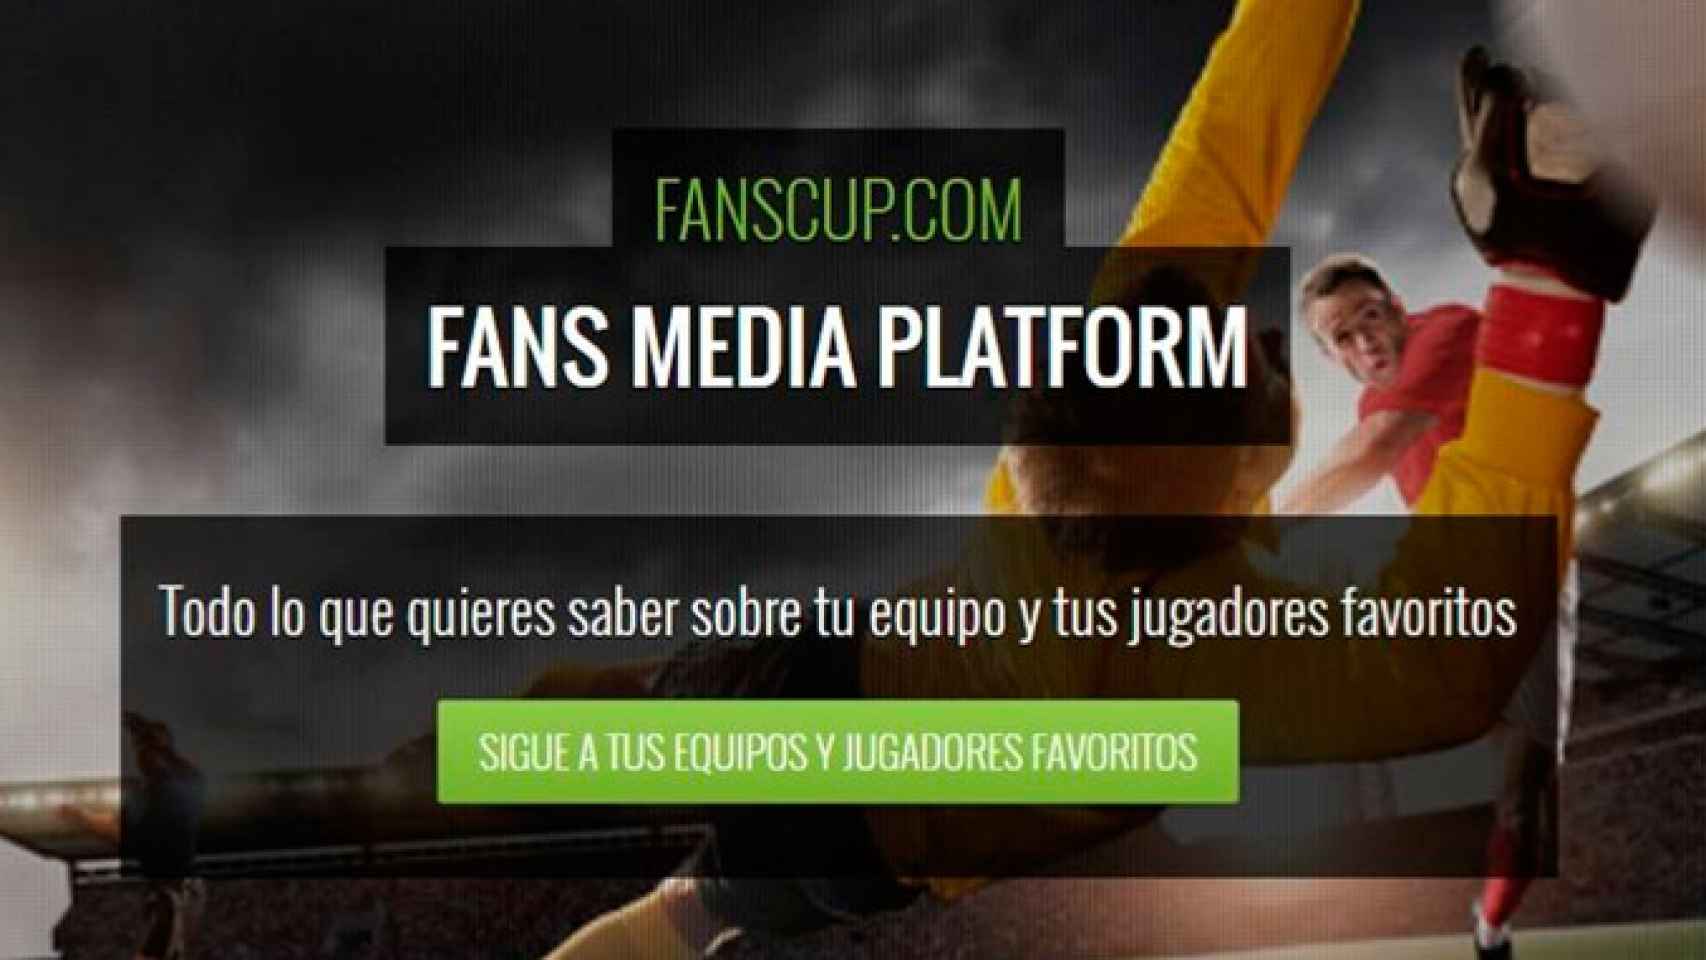 Imagen de la plataforma web Fanscup / FANSCUP.COM